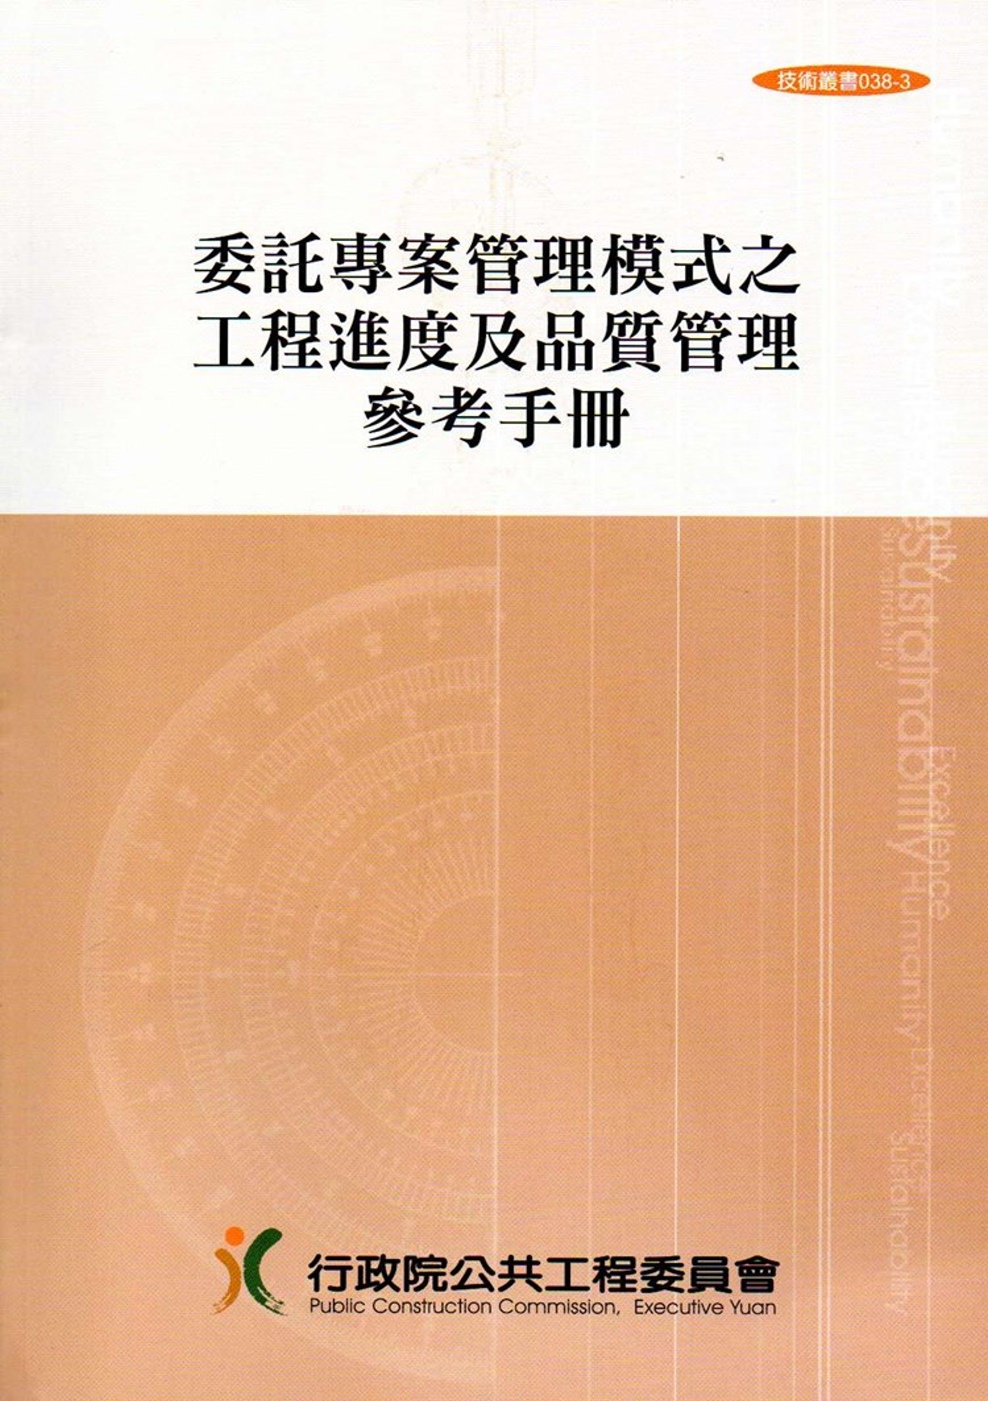 委託專案管理模式之工程進度及品質管理參考手冊(技術叢書038...